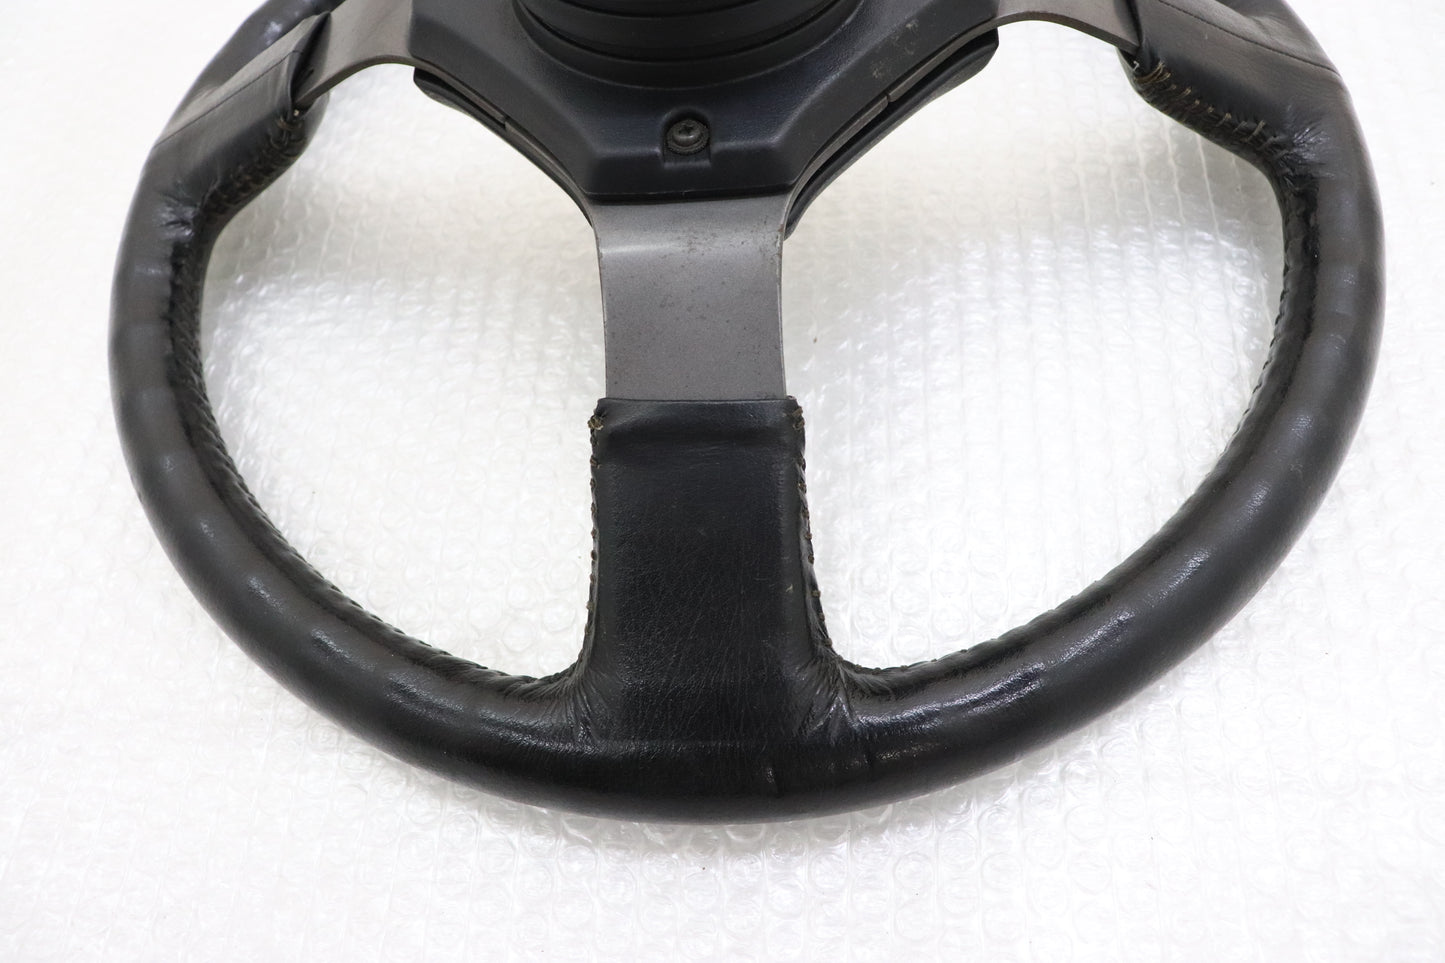 【USED】TOYOTA Steering Wheel - AE86